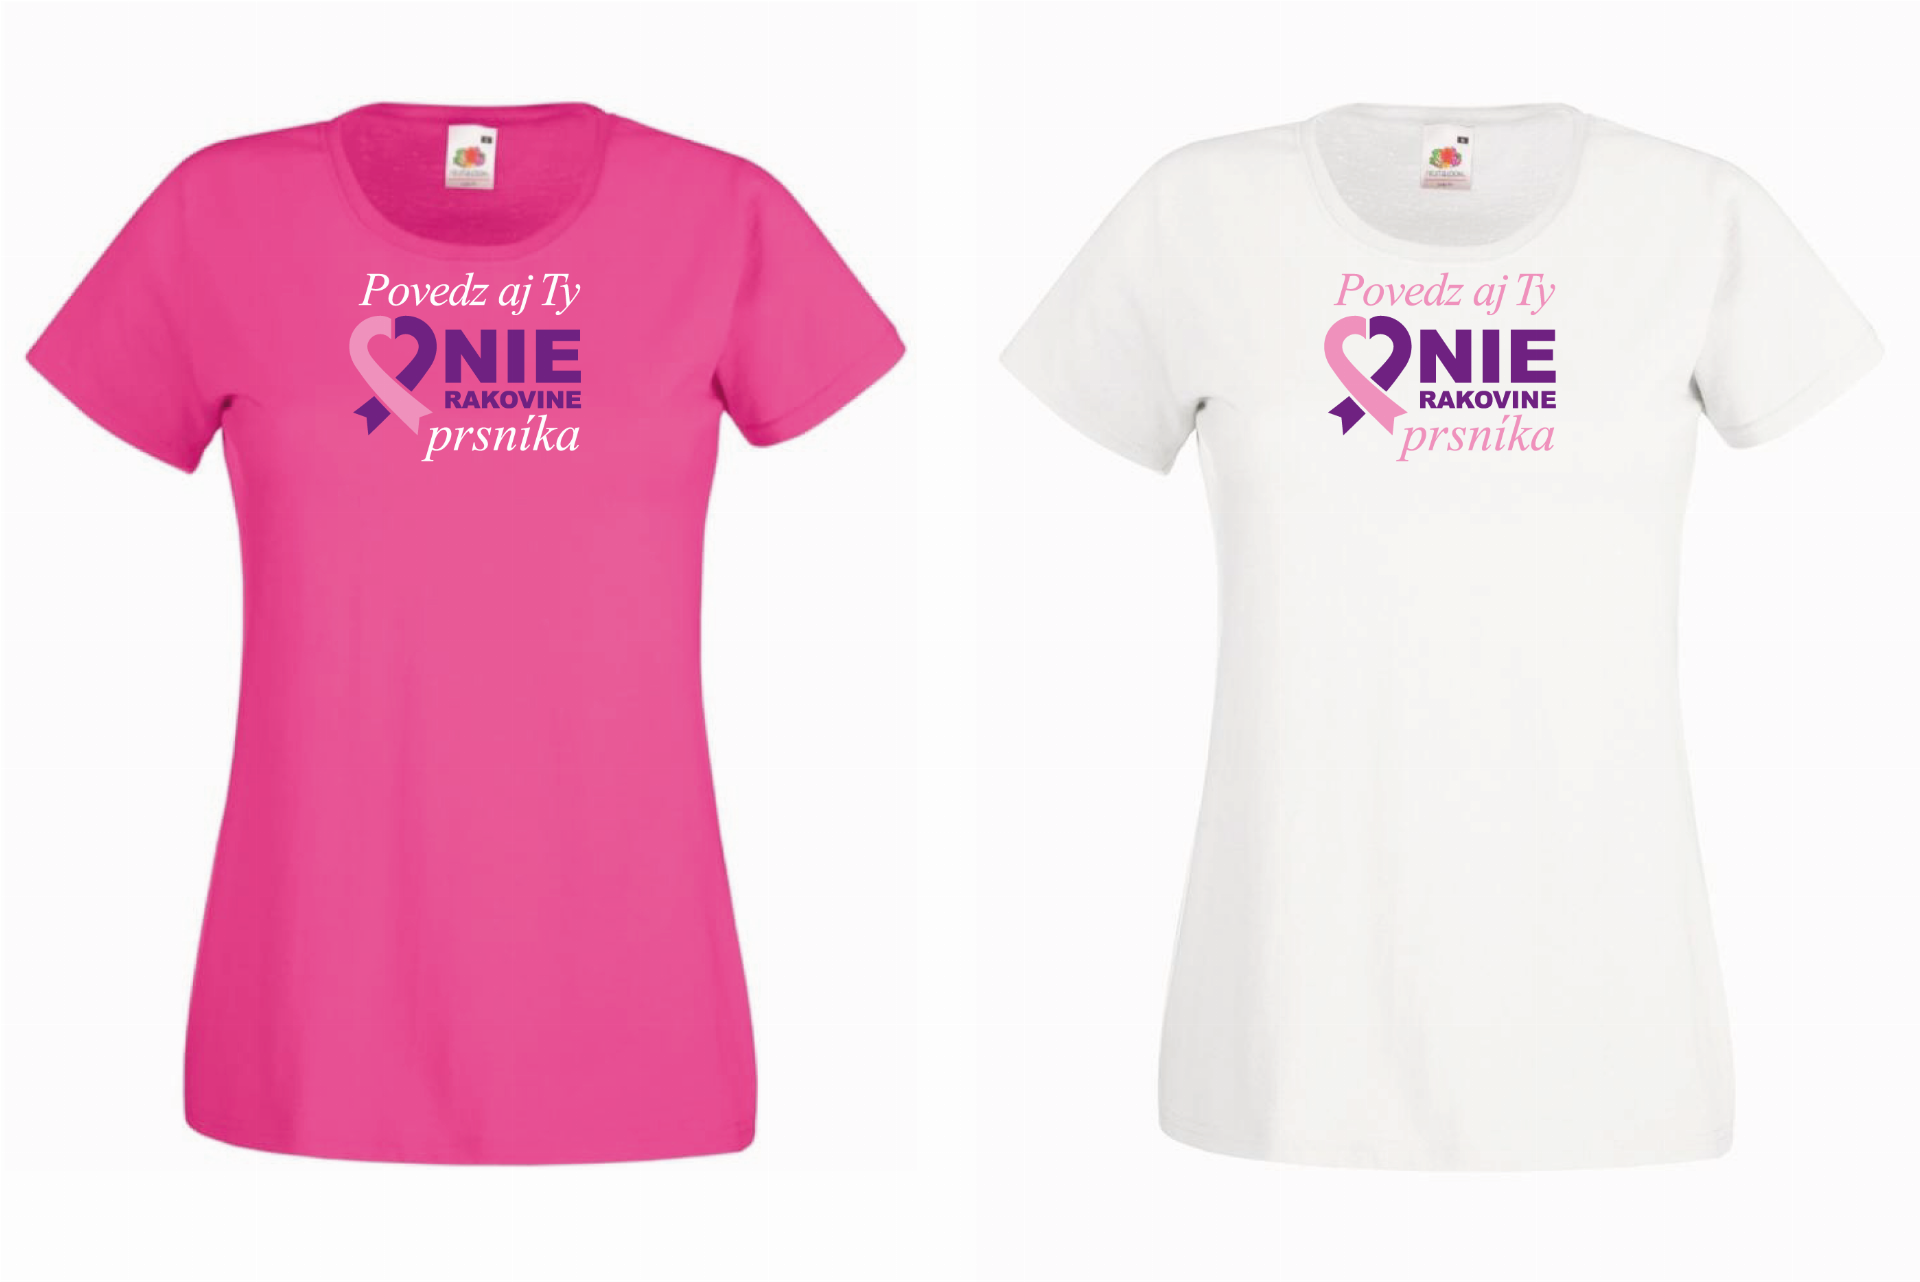 Povedz NIE RAKOVINE, Prsko TOUR, preventívna kampaňa proti rakovine prsníka